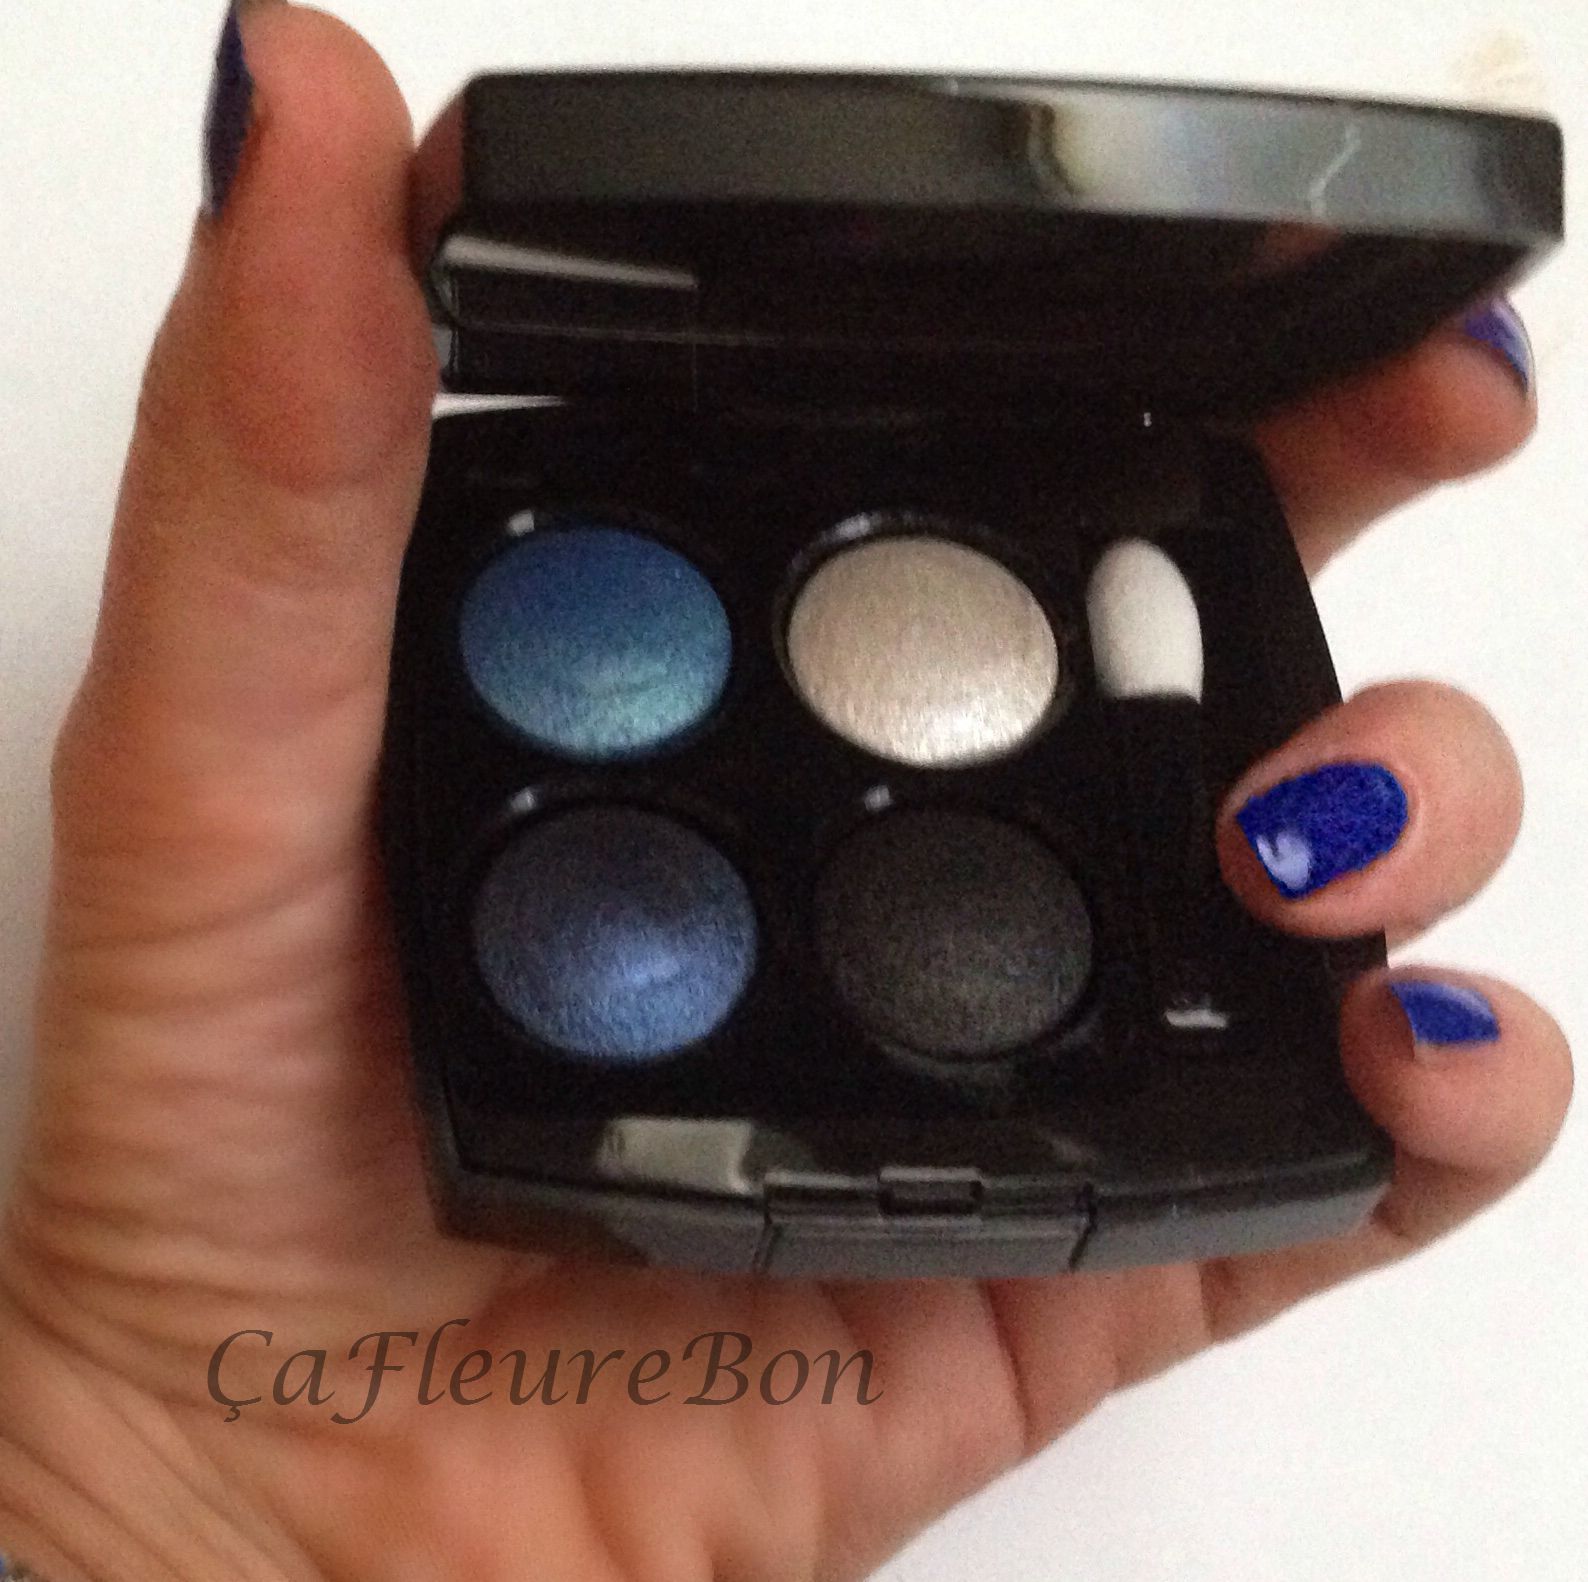 Blue Rhythm de Chanel: Les 4 Ombres Multi Effect Quadra Shadows 244 TISSÉ  JAZZ Limited edition and LE VERNIS Nail Colour 665 Vibrato Review  (Swatches, Photos) - ÇaFleureBon Perfume Blog